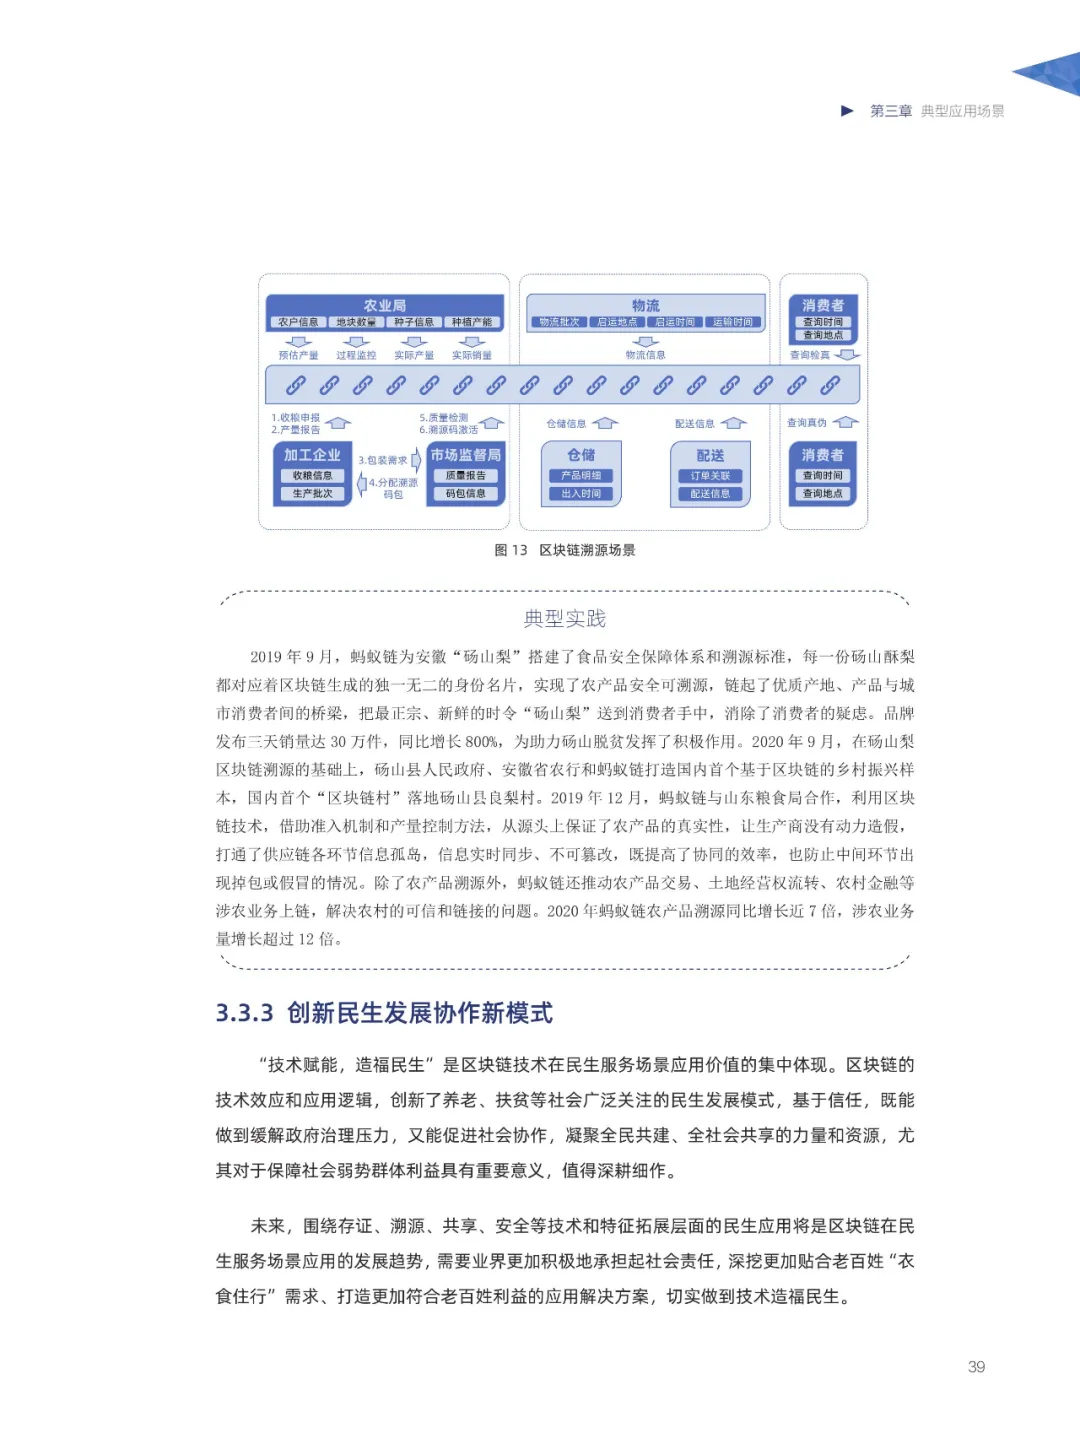 信任经济的崛起——2020中国区块链发展报告_加密算法_40